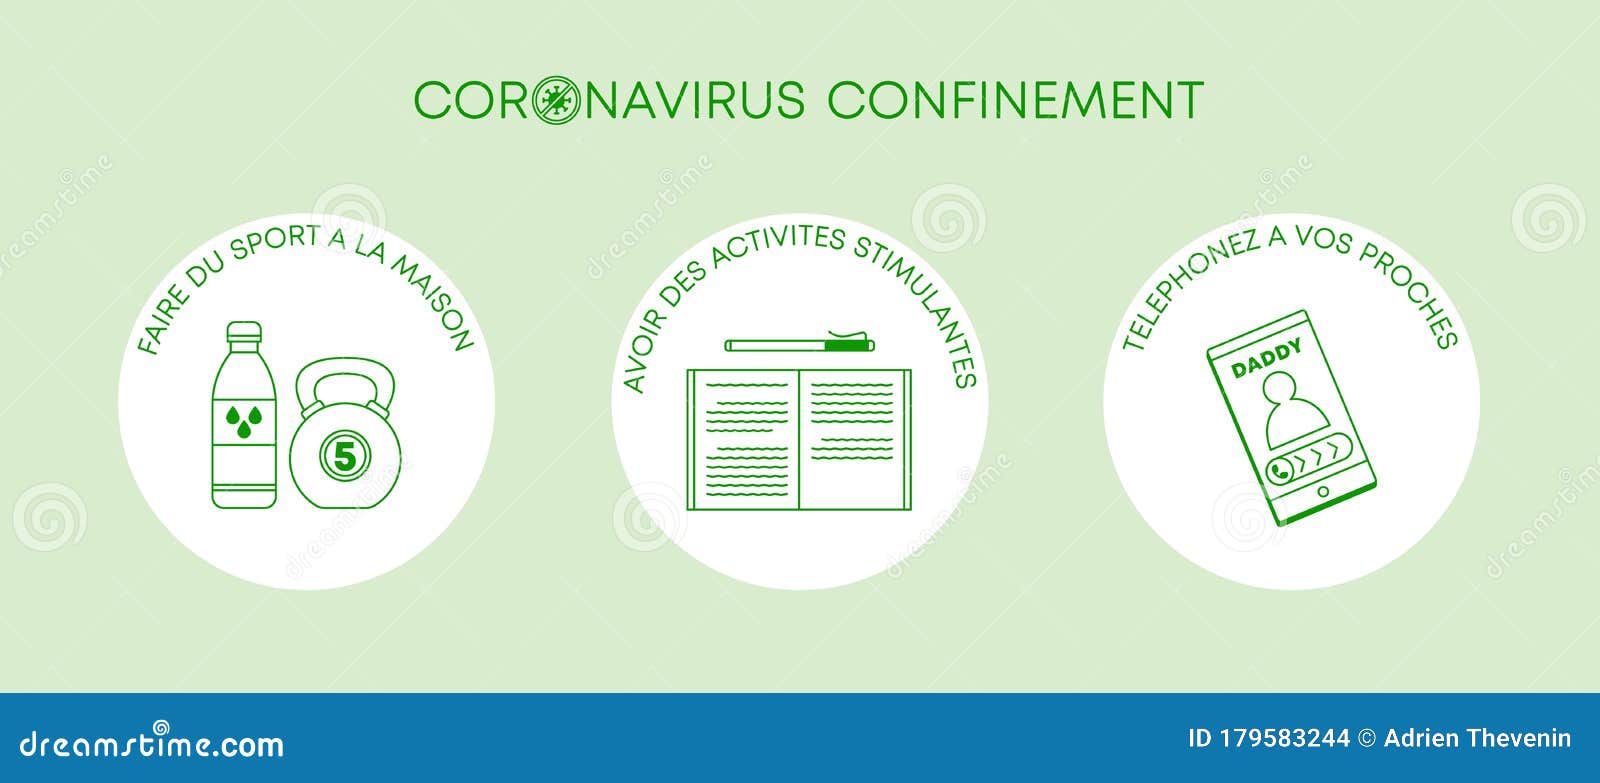 confinement coronavirus - banniere covid19 - activite a la maison - francais - vert vecteur 